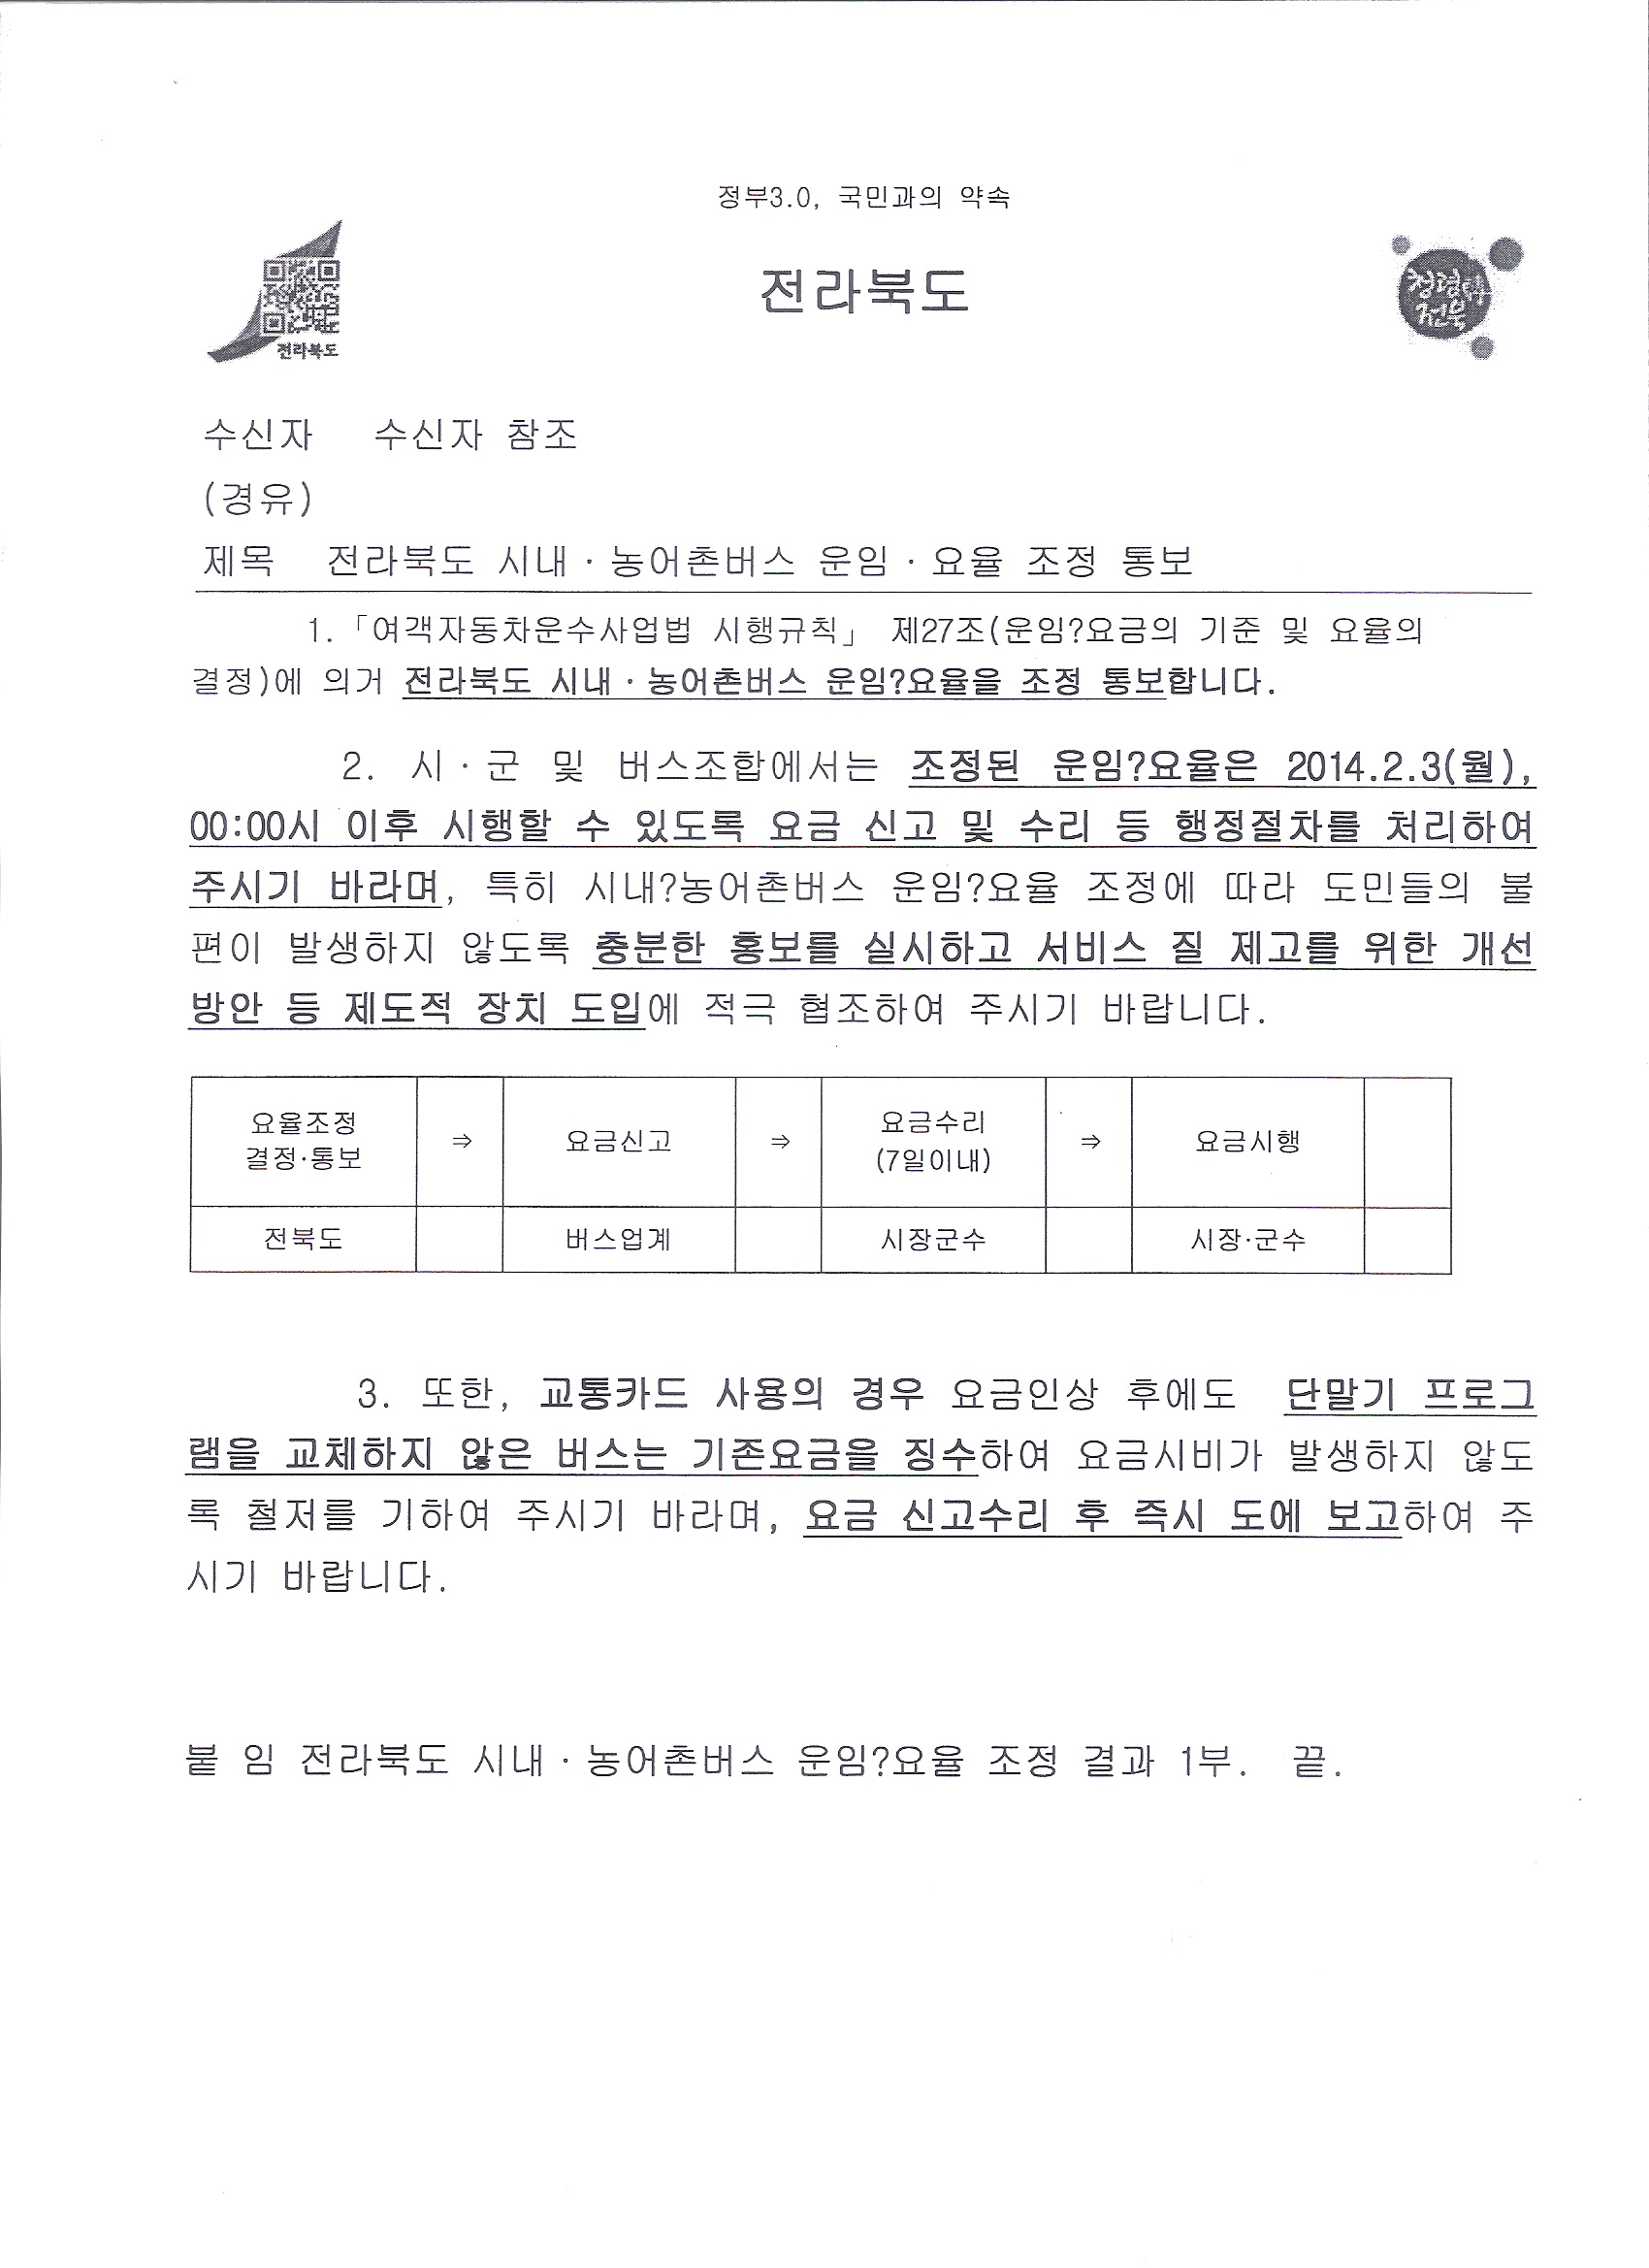 버스요금_전라북도 대중교통과-2551(2014.1.29)호 1.jpg